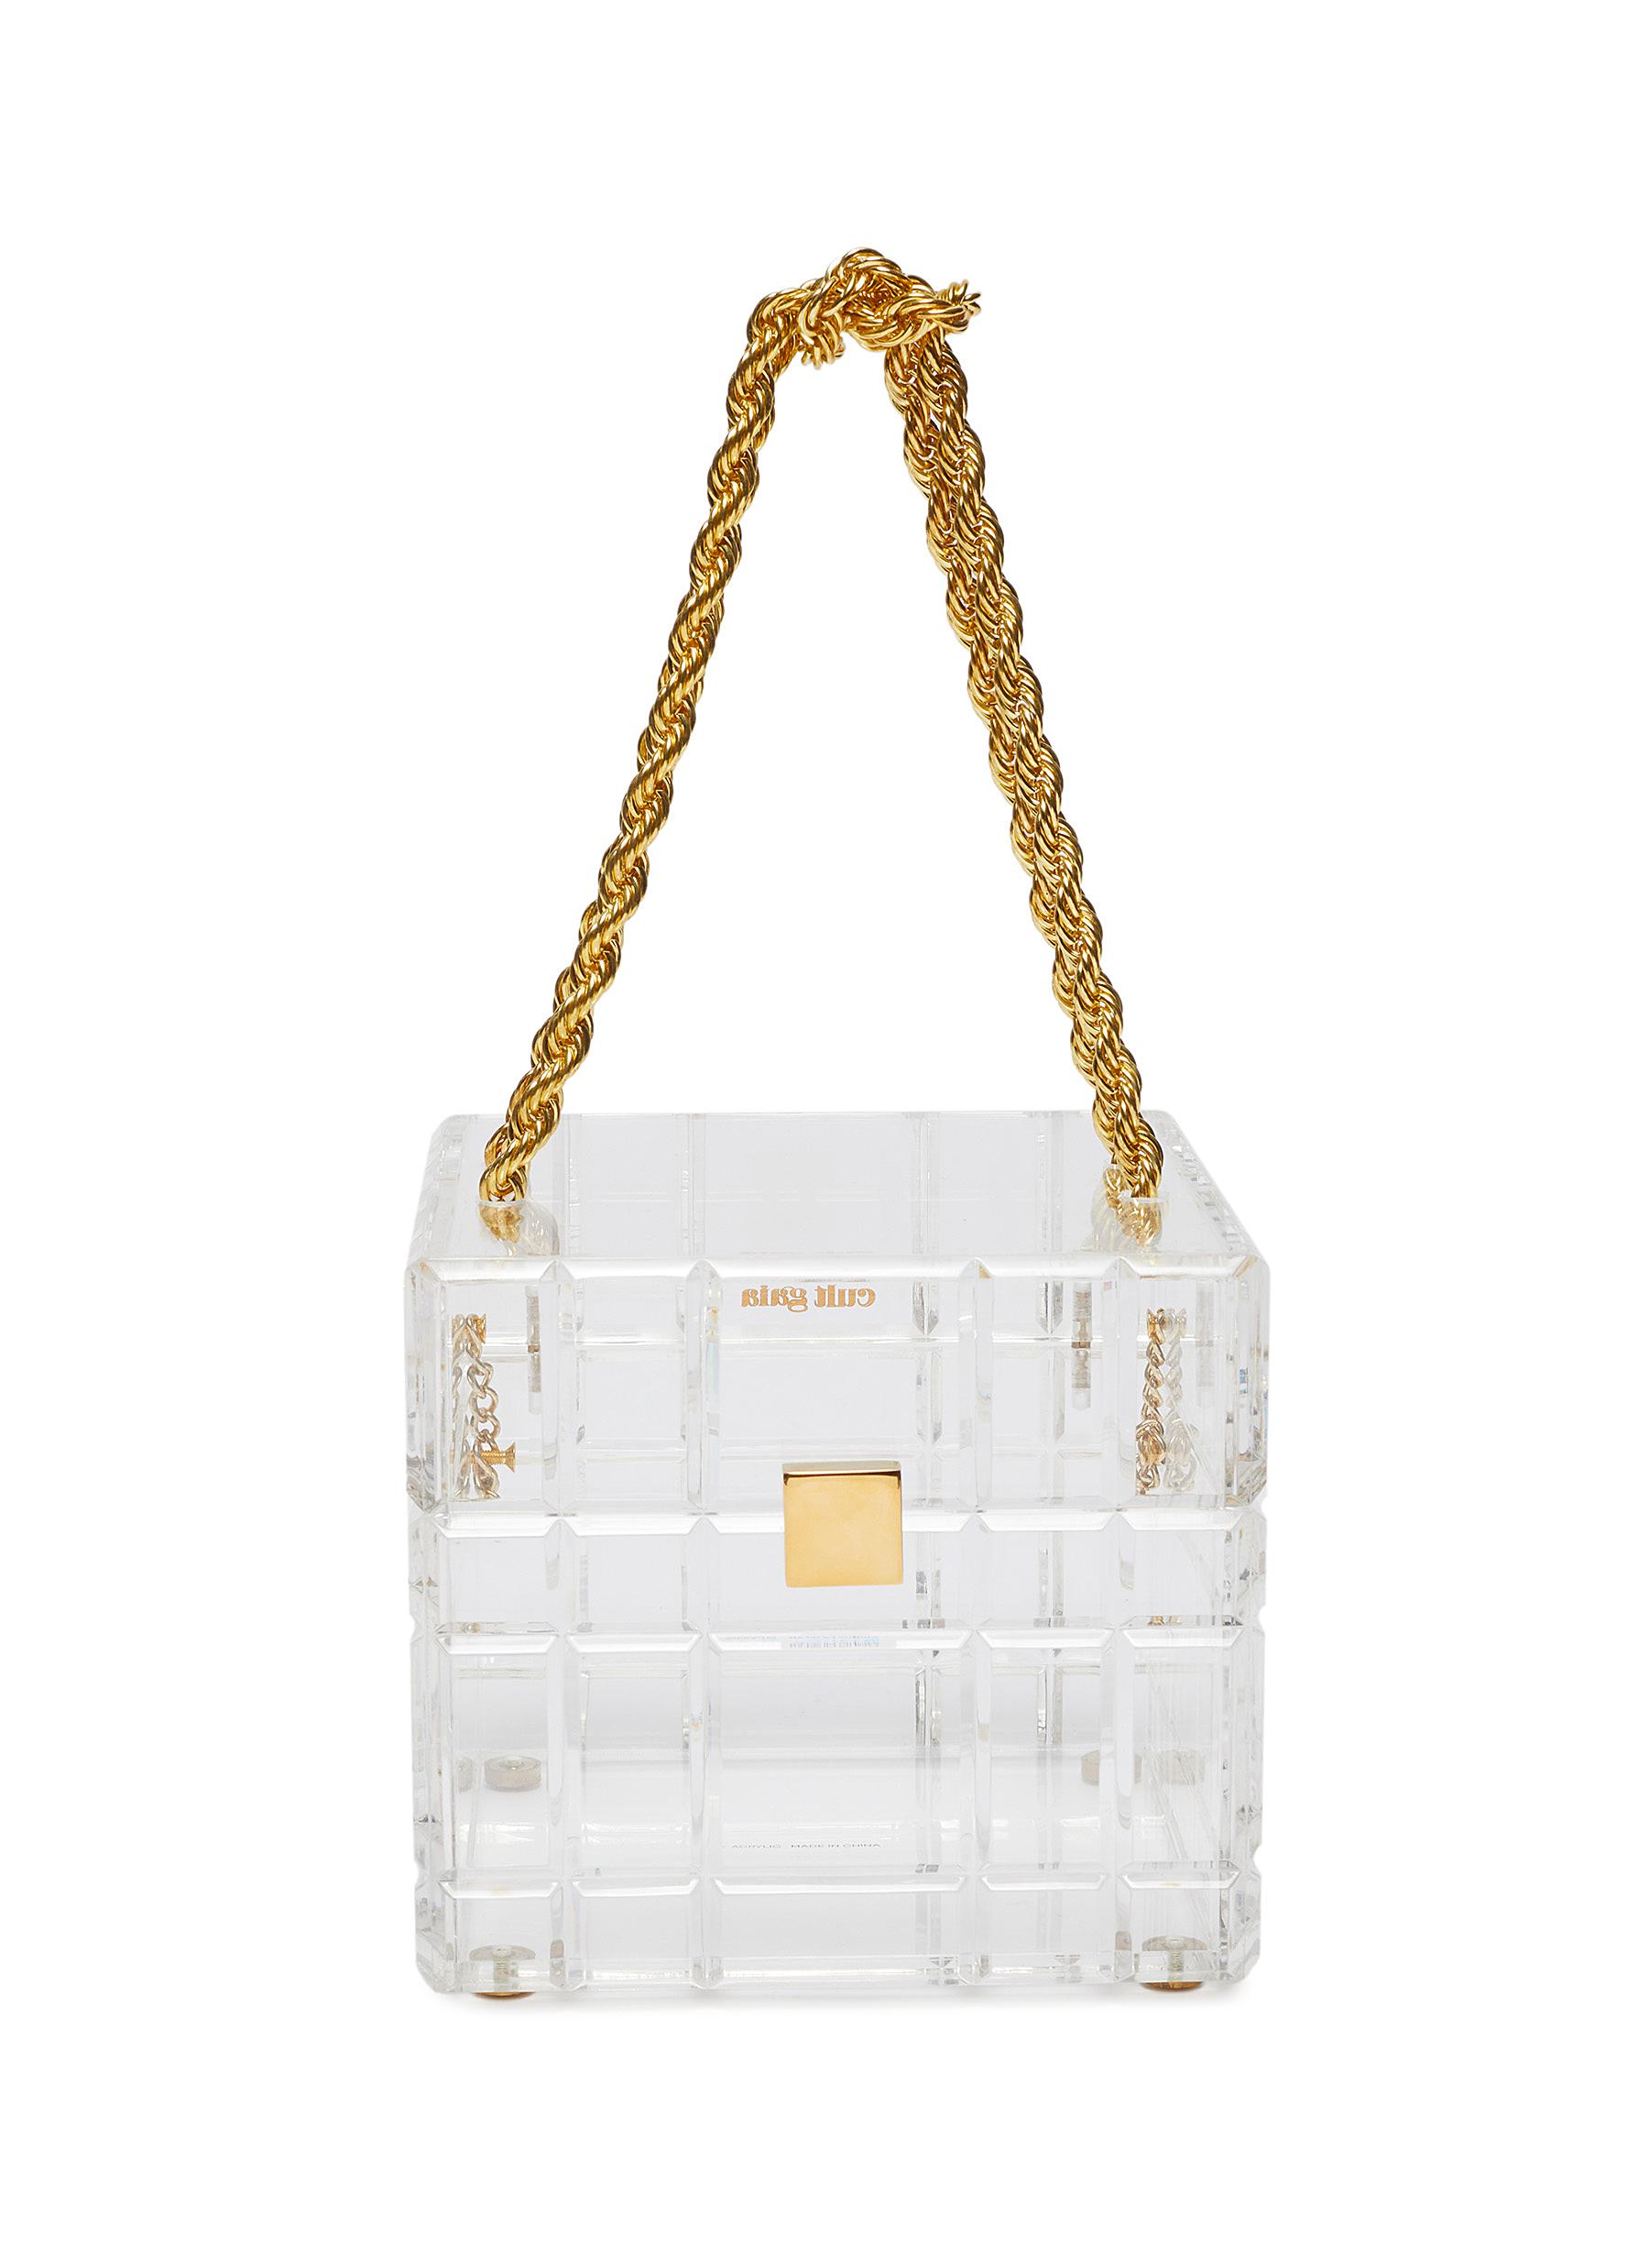 Cult Gaia 'phaedra' Clear Acrylic Top Handle Box Bag In Neutrals